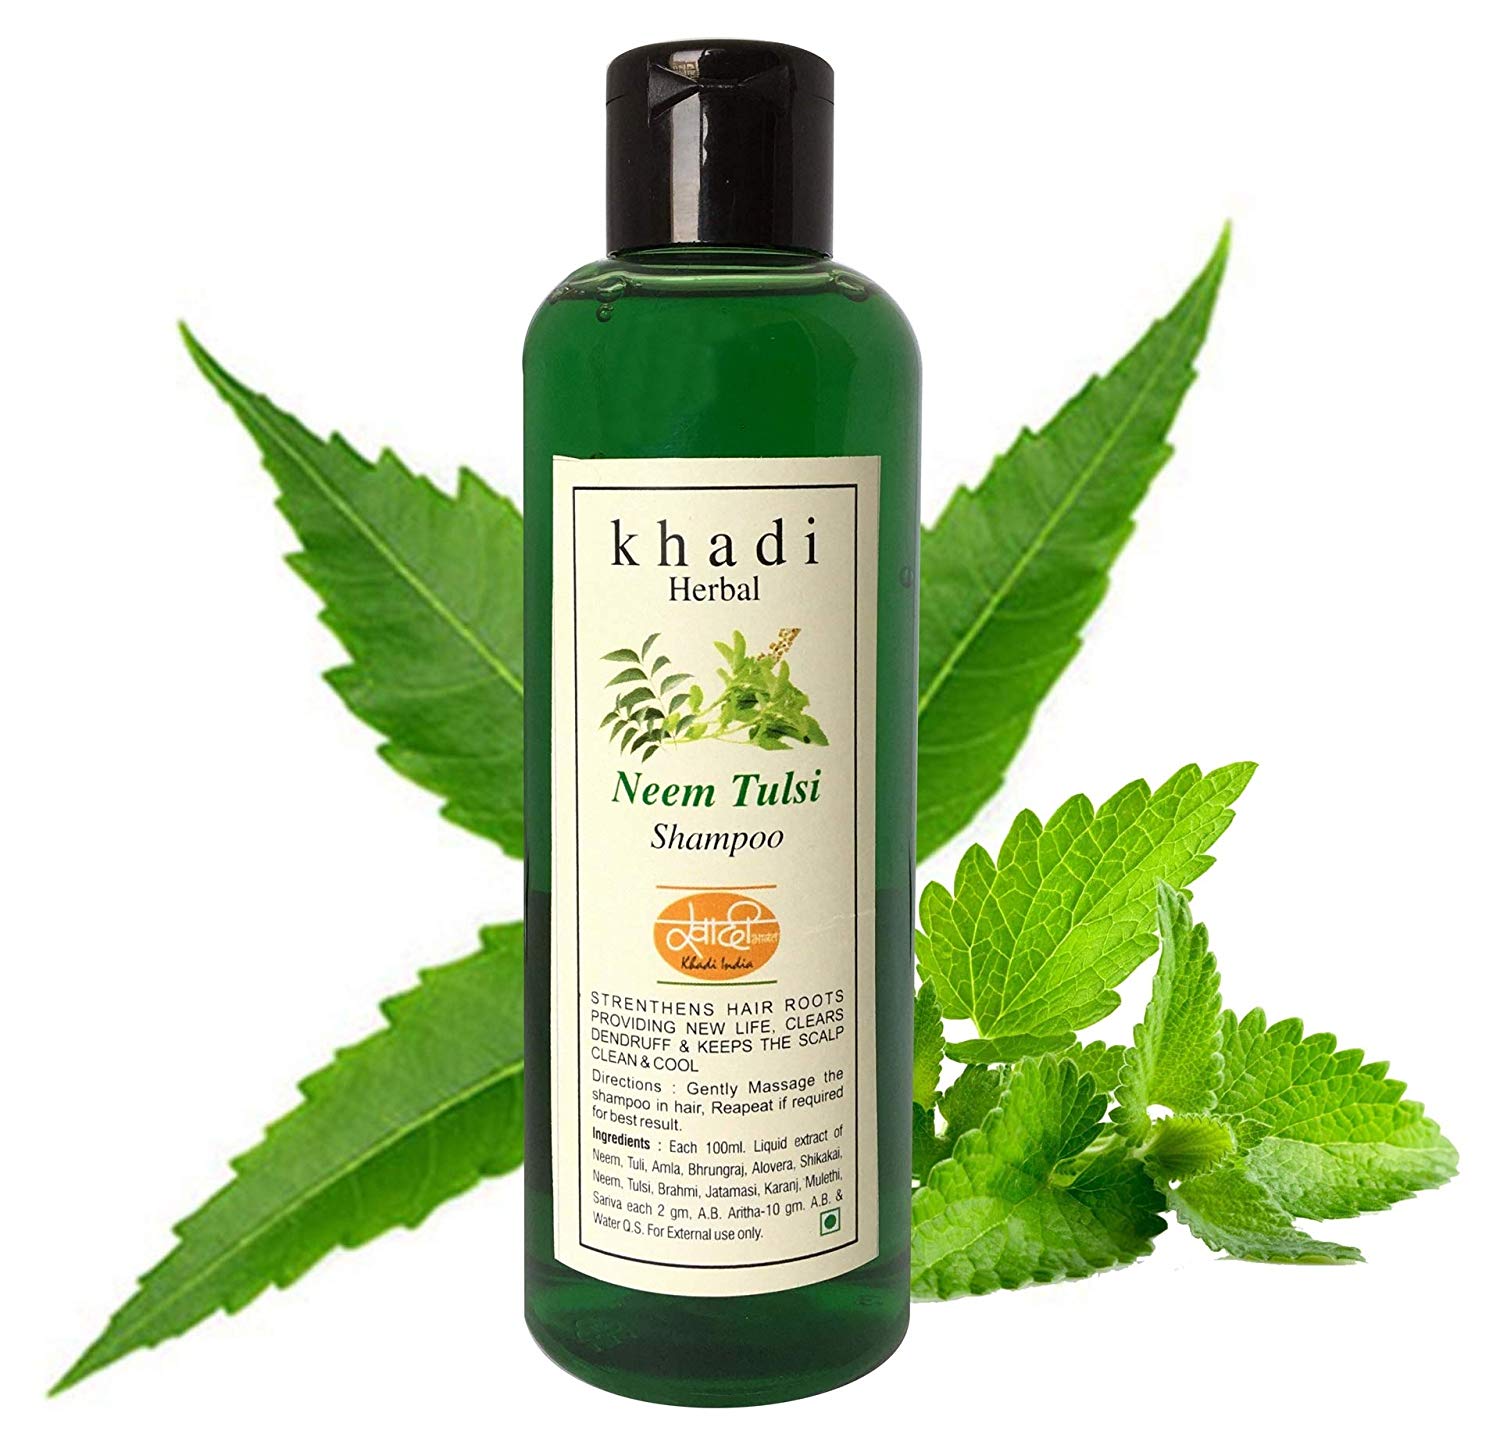 Khadi Herbal shampoo from Amazon INDIA